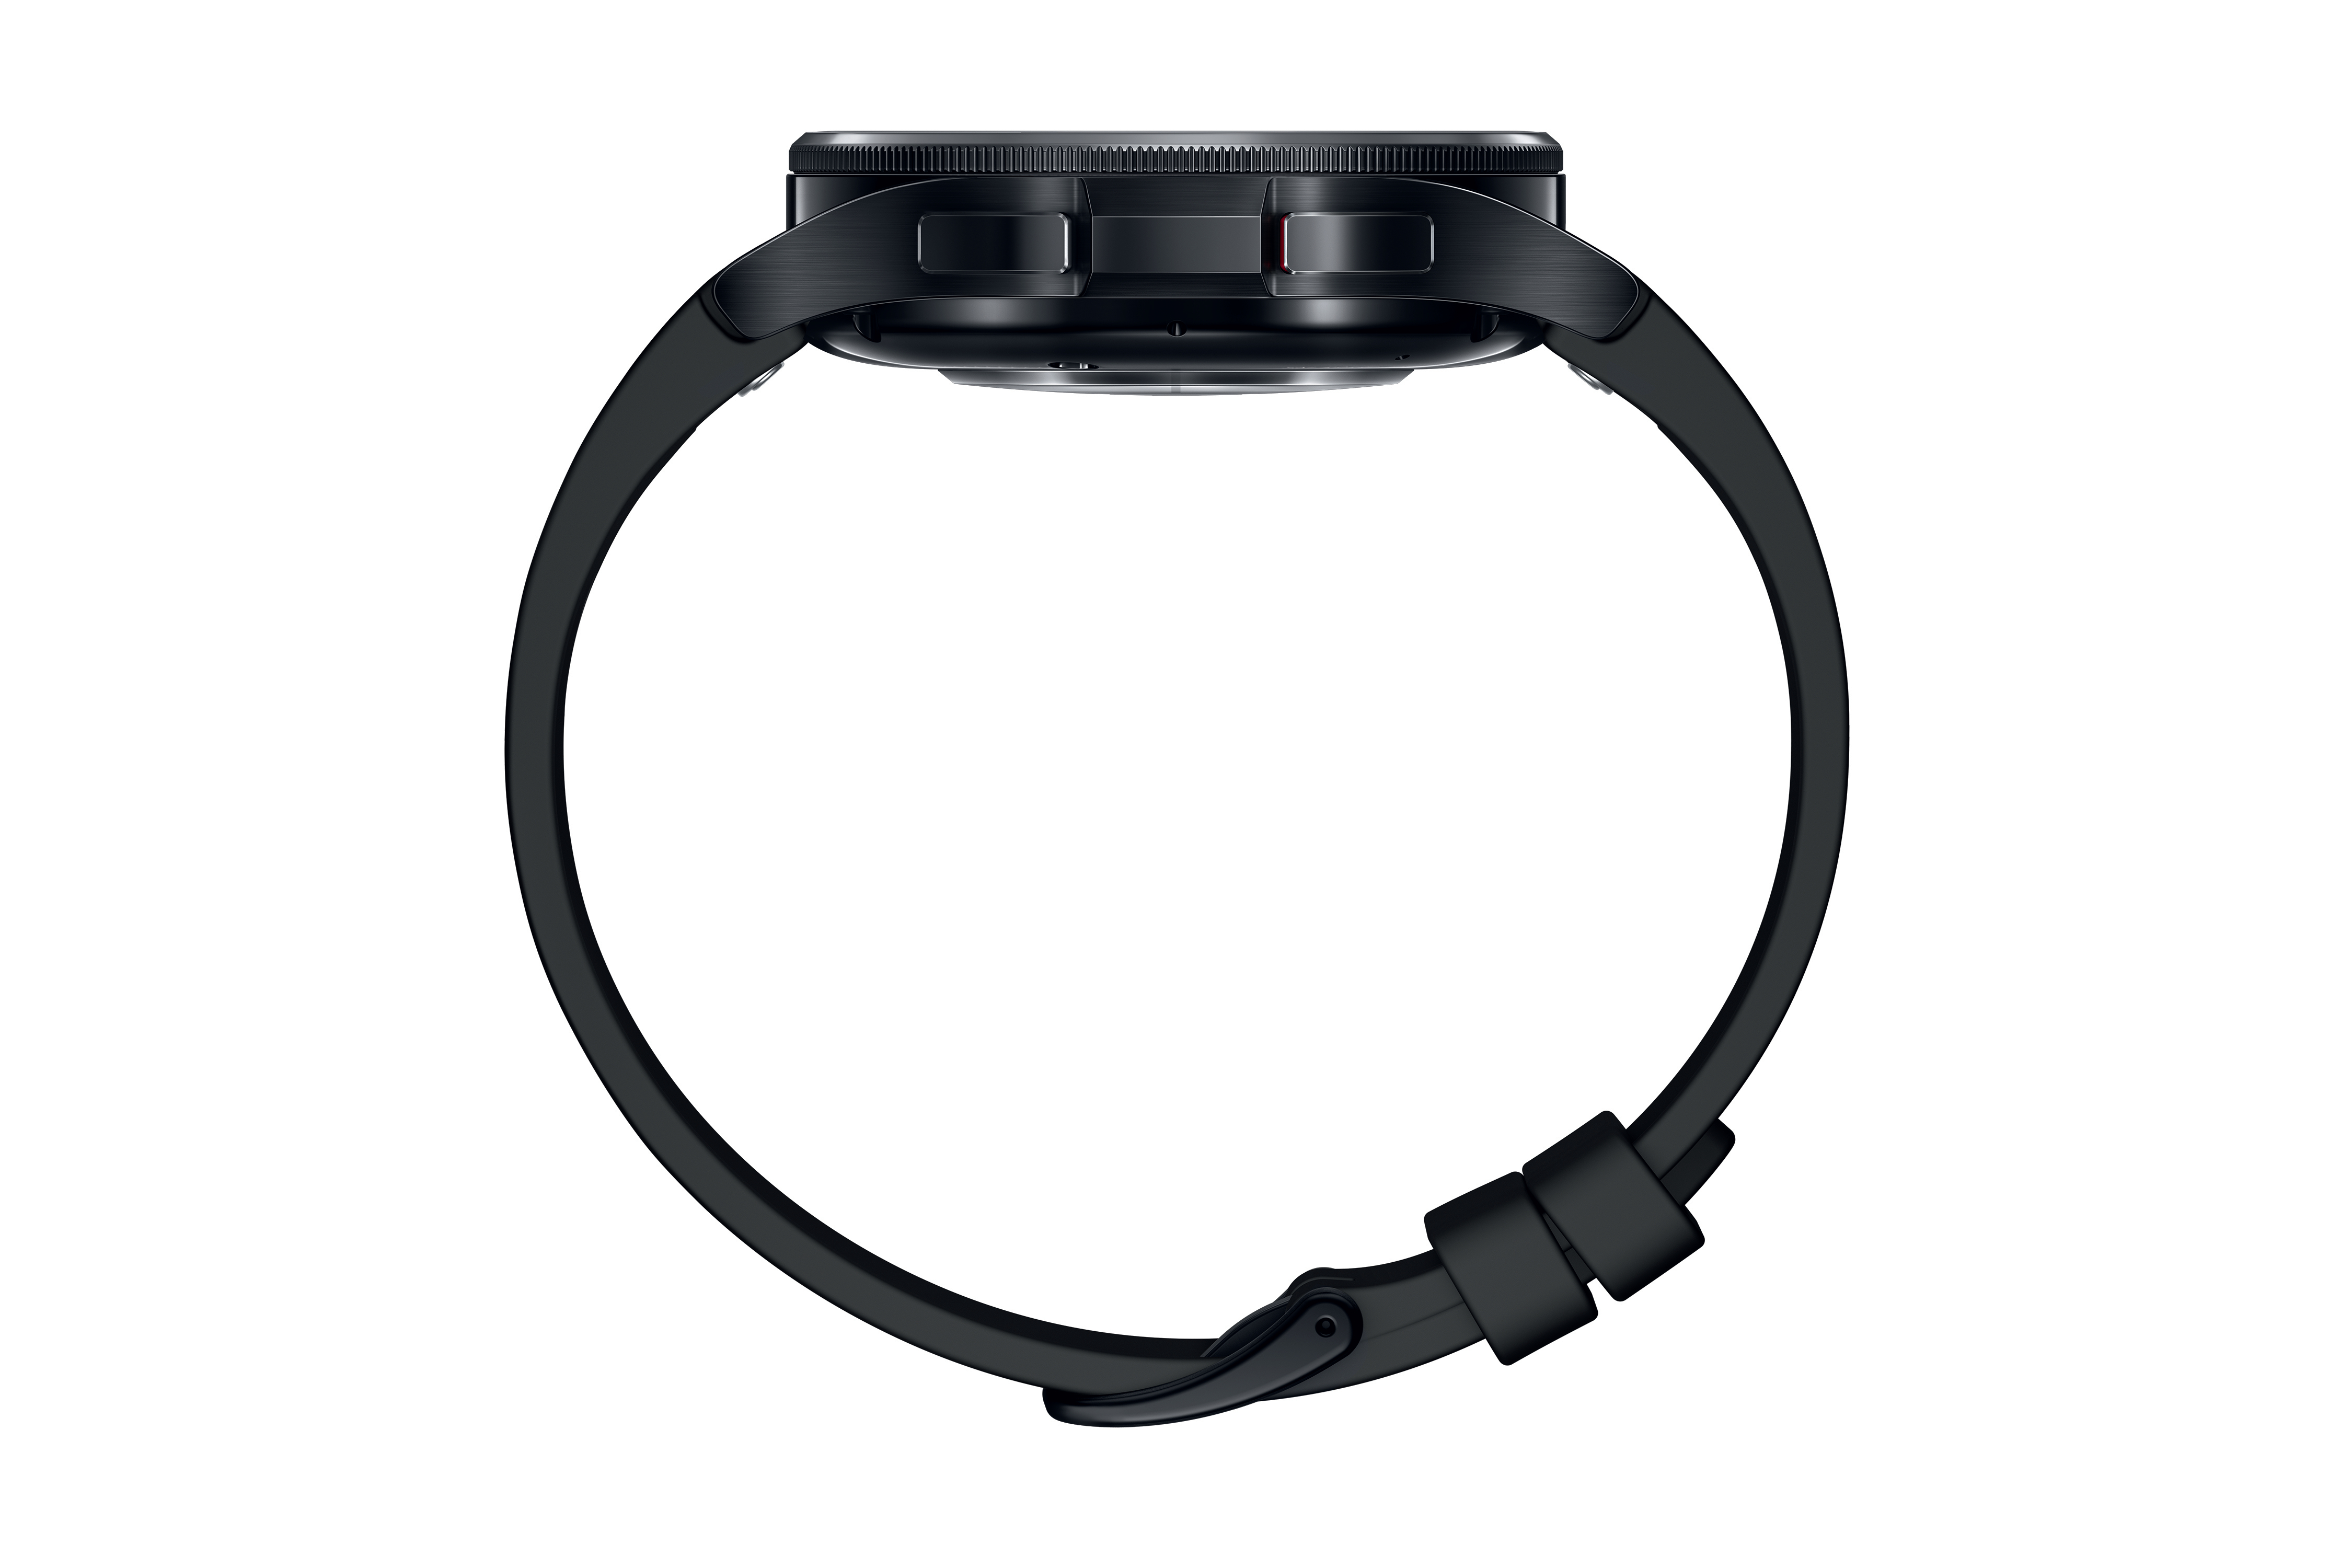 LTE S/M, Black Classic 43 Watch6 Smartwatch SAMSUNG Galaxy Kunstleder, mm